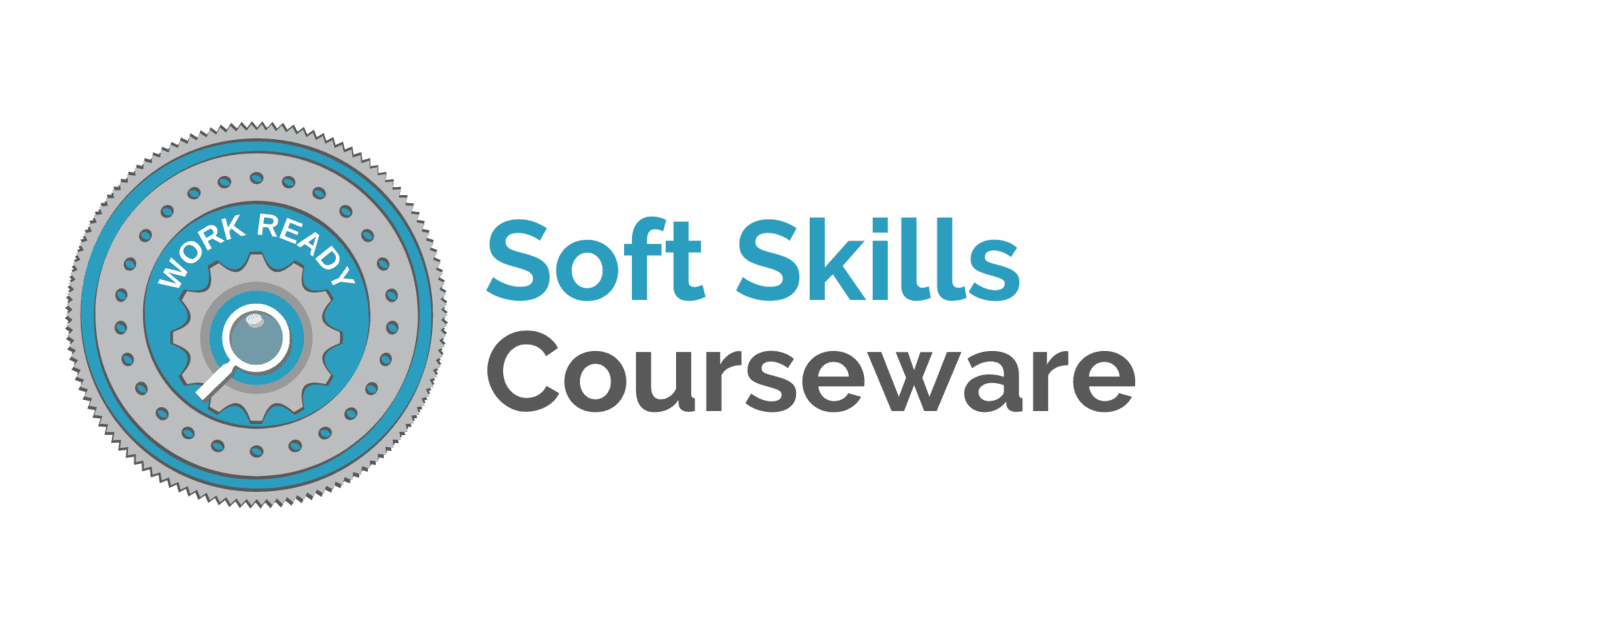 Soft Skills Courseware